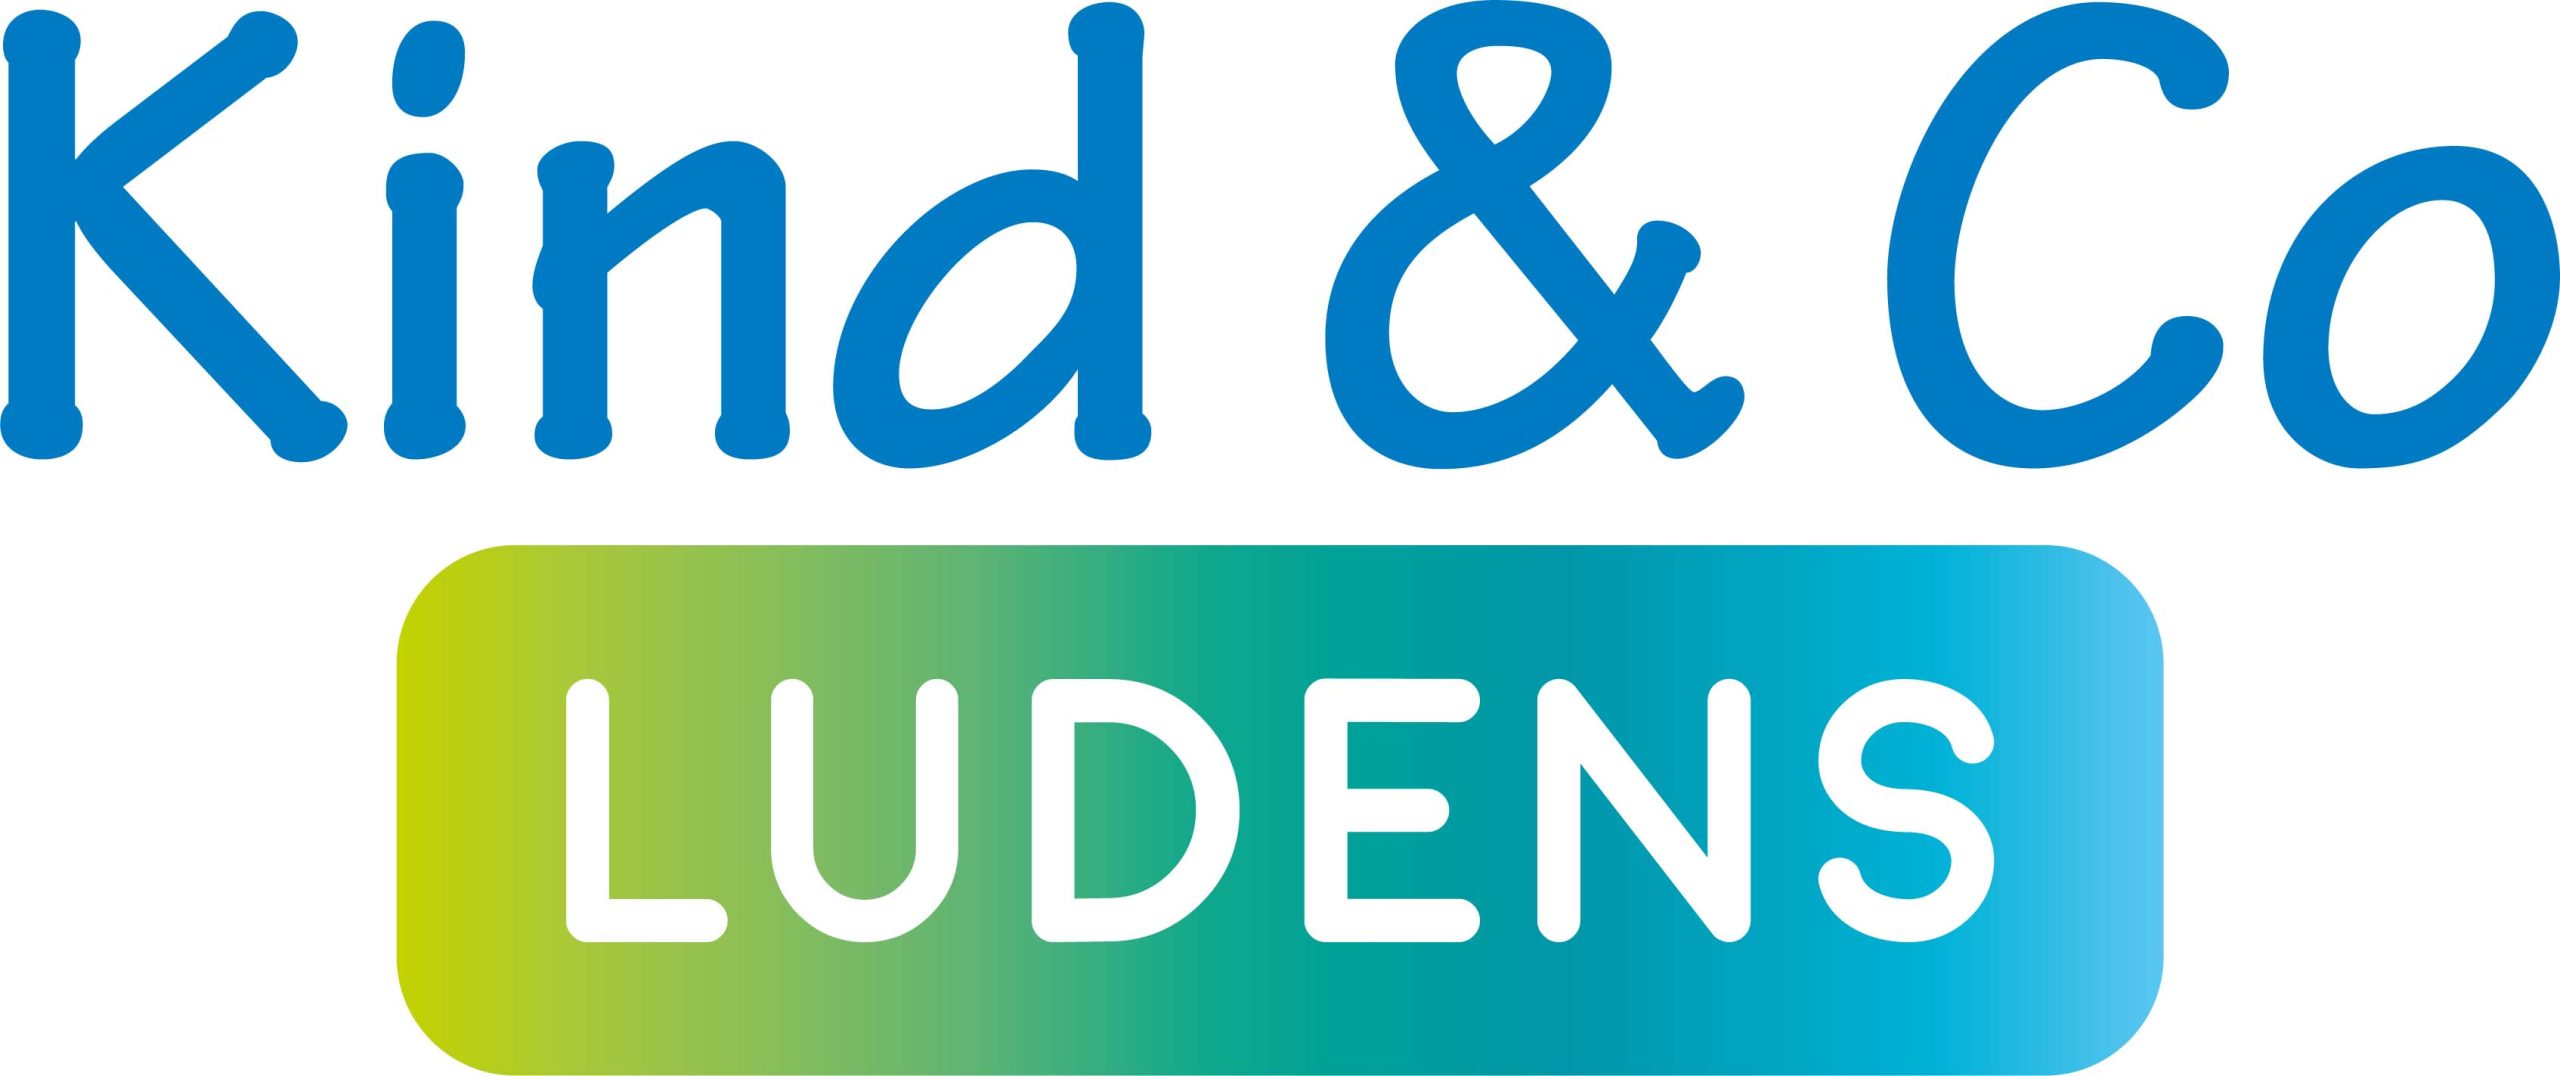 Stichting KMN Kind & Co en Ludens